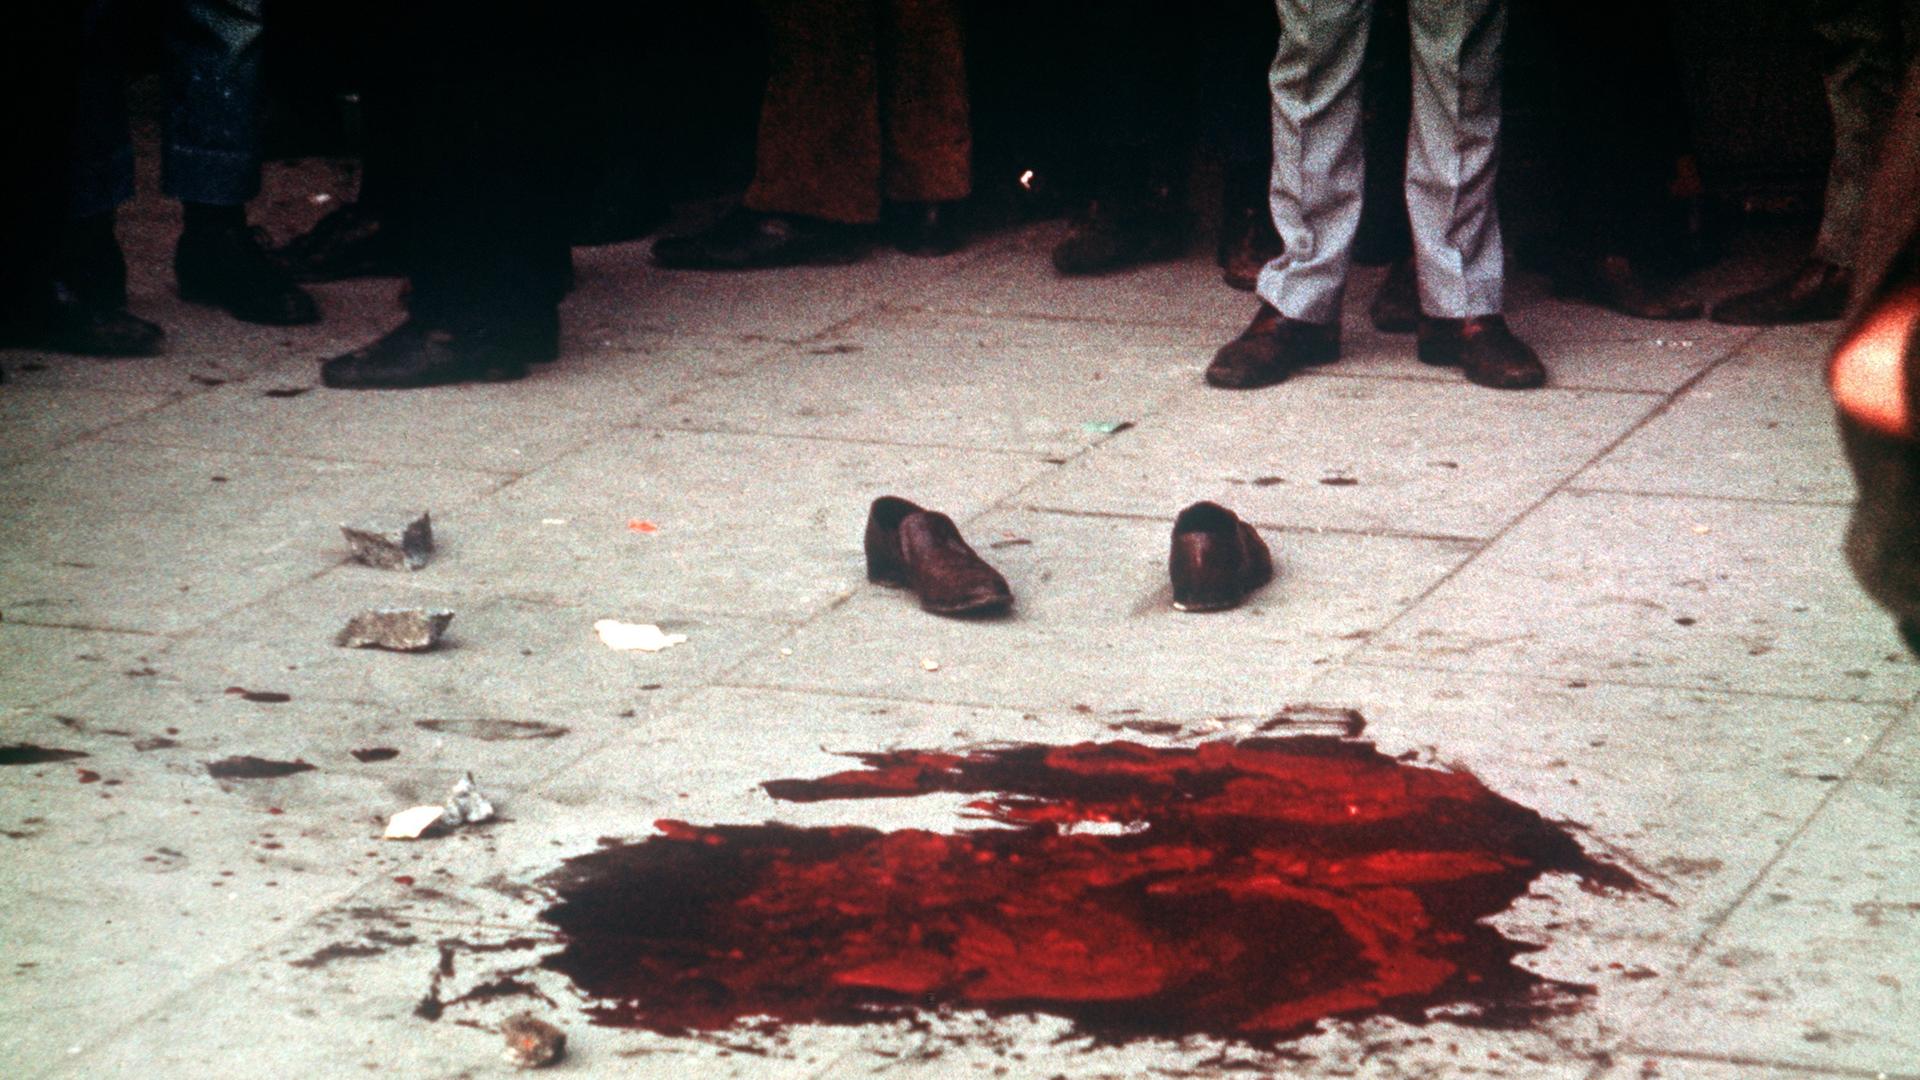 Boody Sunday in der nordirischen Stadt Derry am 30. Januar 1972: Ein Blutlache und ein Paar Halbschuhe markieren die Stelle, an der einer der Demonstranten ums Leben kam